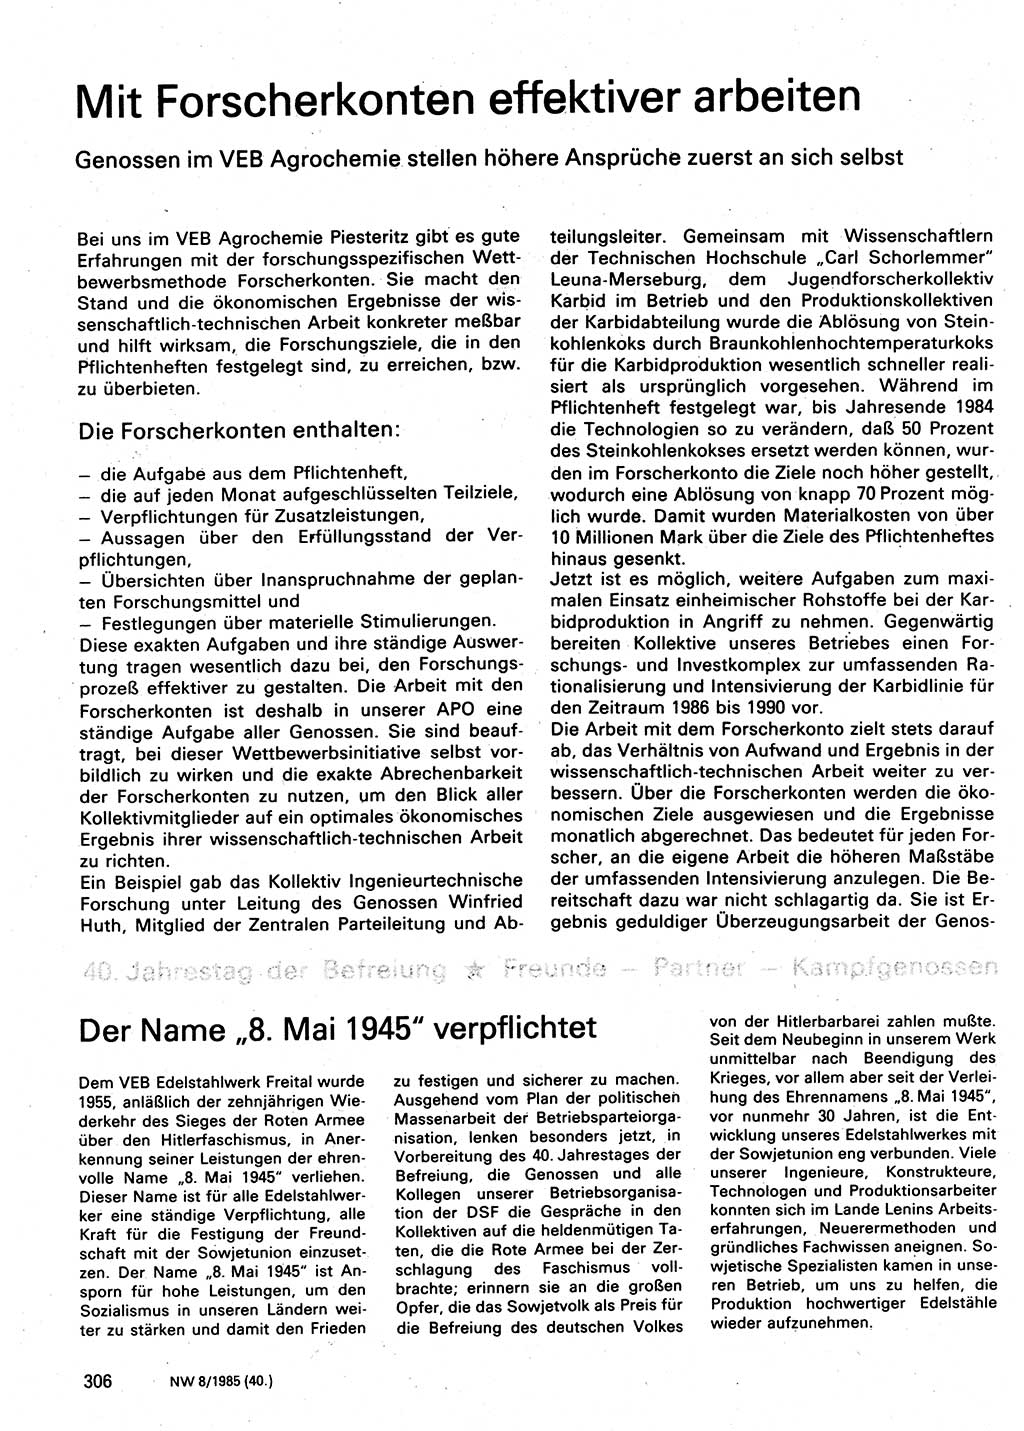 Neuer Weg (NW), Organ des Zentralkomitees (ZK) der SED (Sozialistische Einheitspartei Deutschlands) für Fragen des Parteilebens, 40. Jahrgang [Deutsche Demokratische Republik (DDR)] 1985, Seite 306 (NW ZK SED DDR 1985, S. 306)